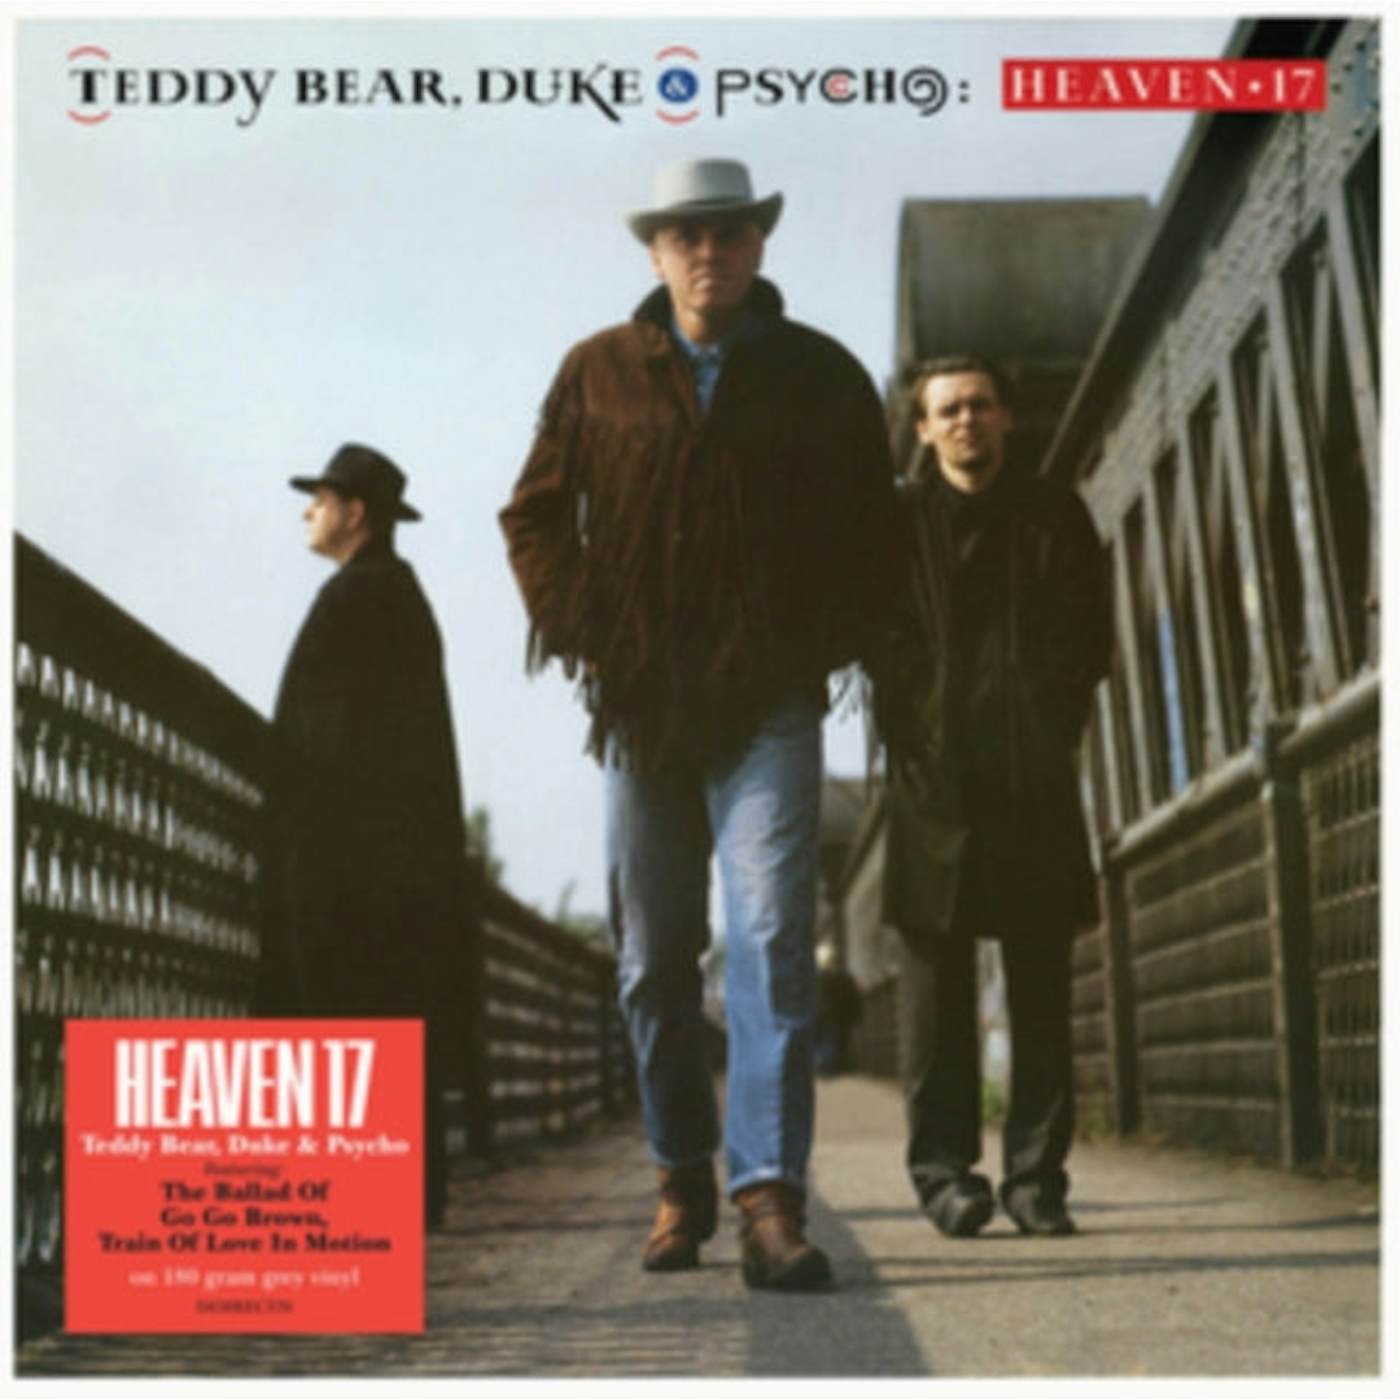 Heaven 17  LP Vinyl Record  Teddy Bear. Duke And Psycho (Grey Vinyl)